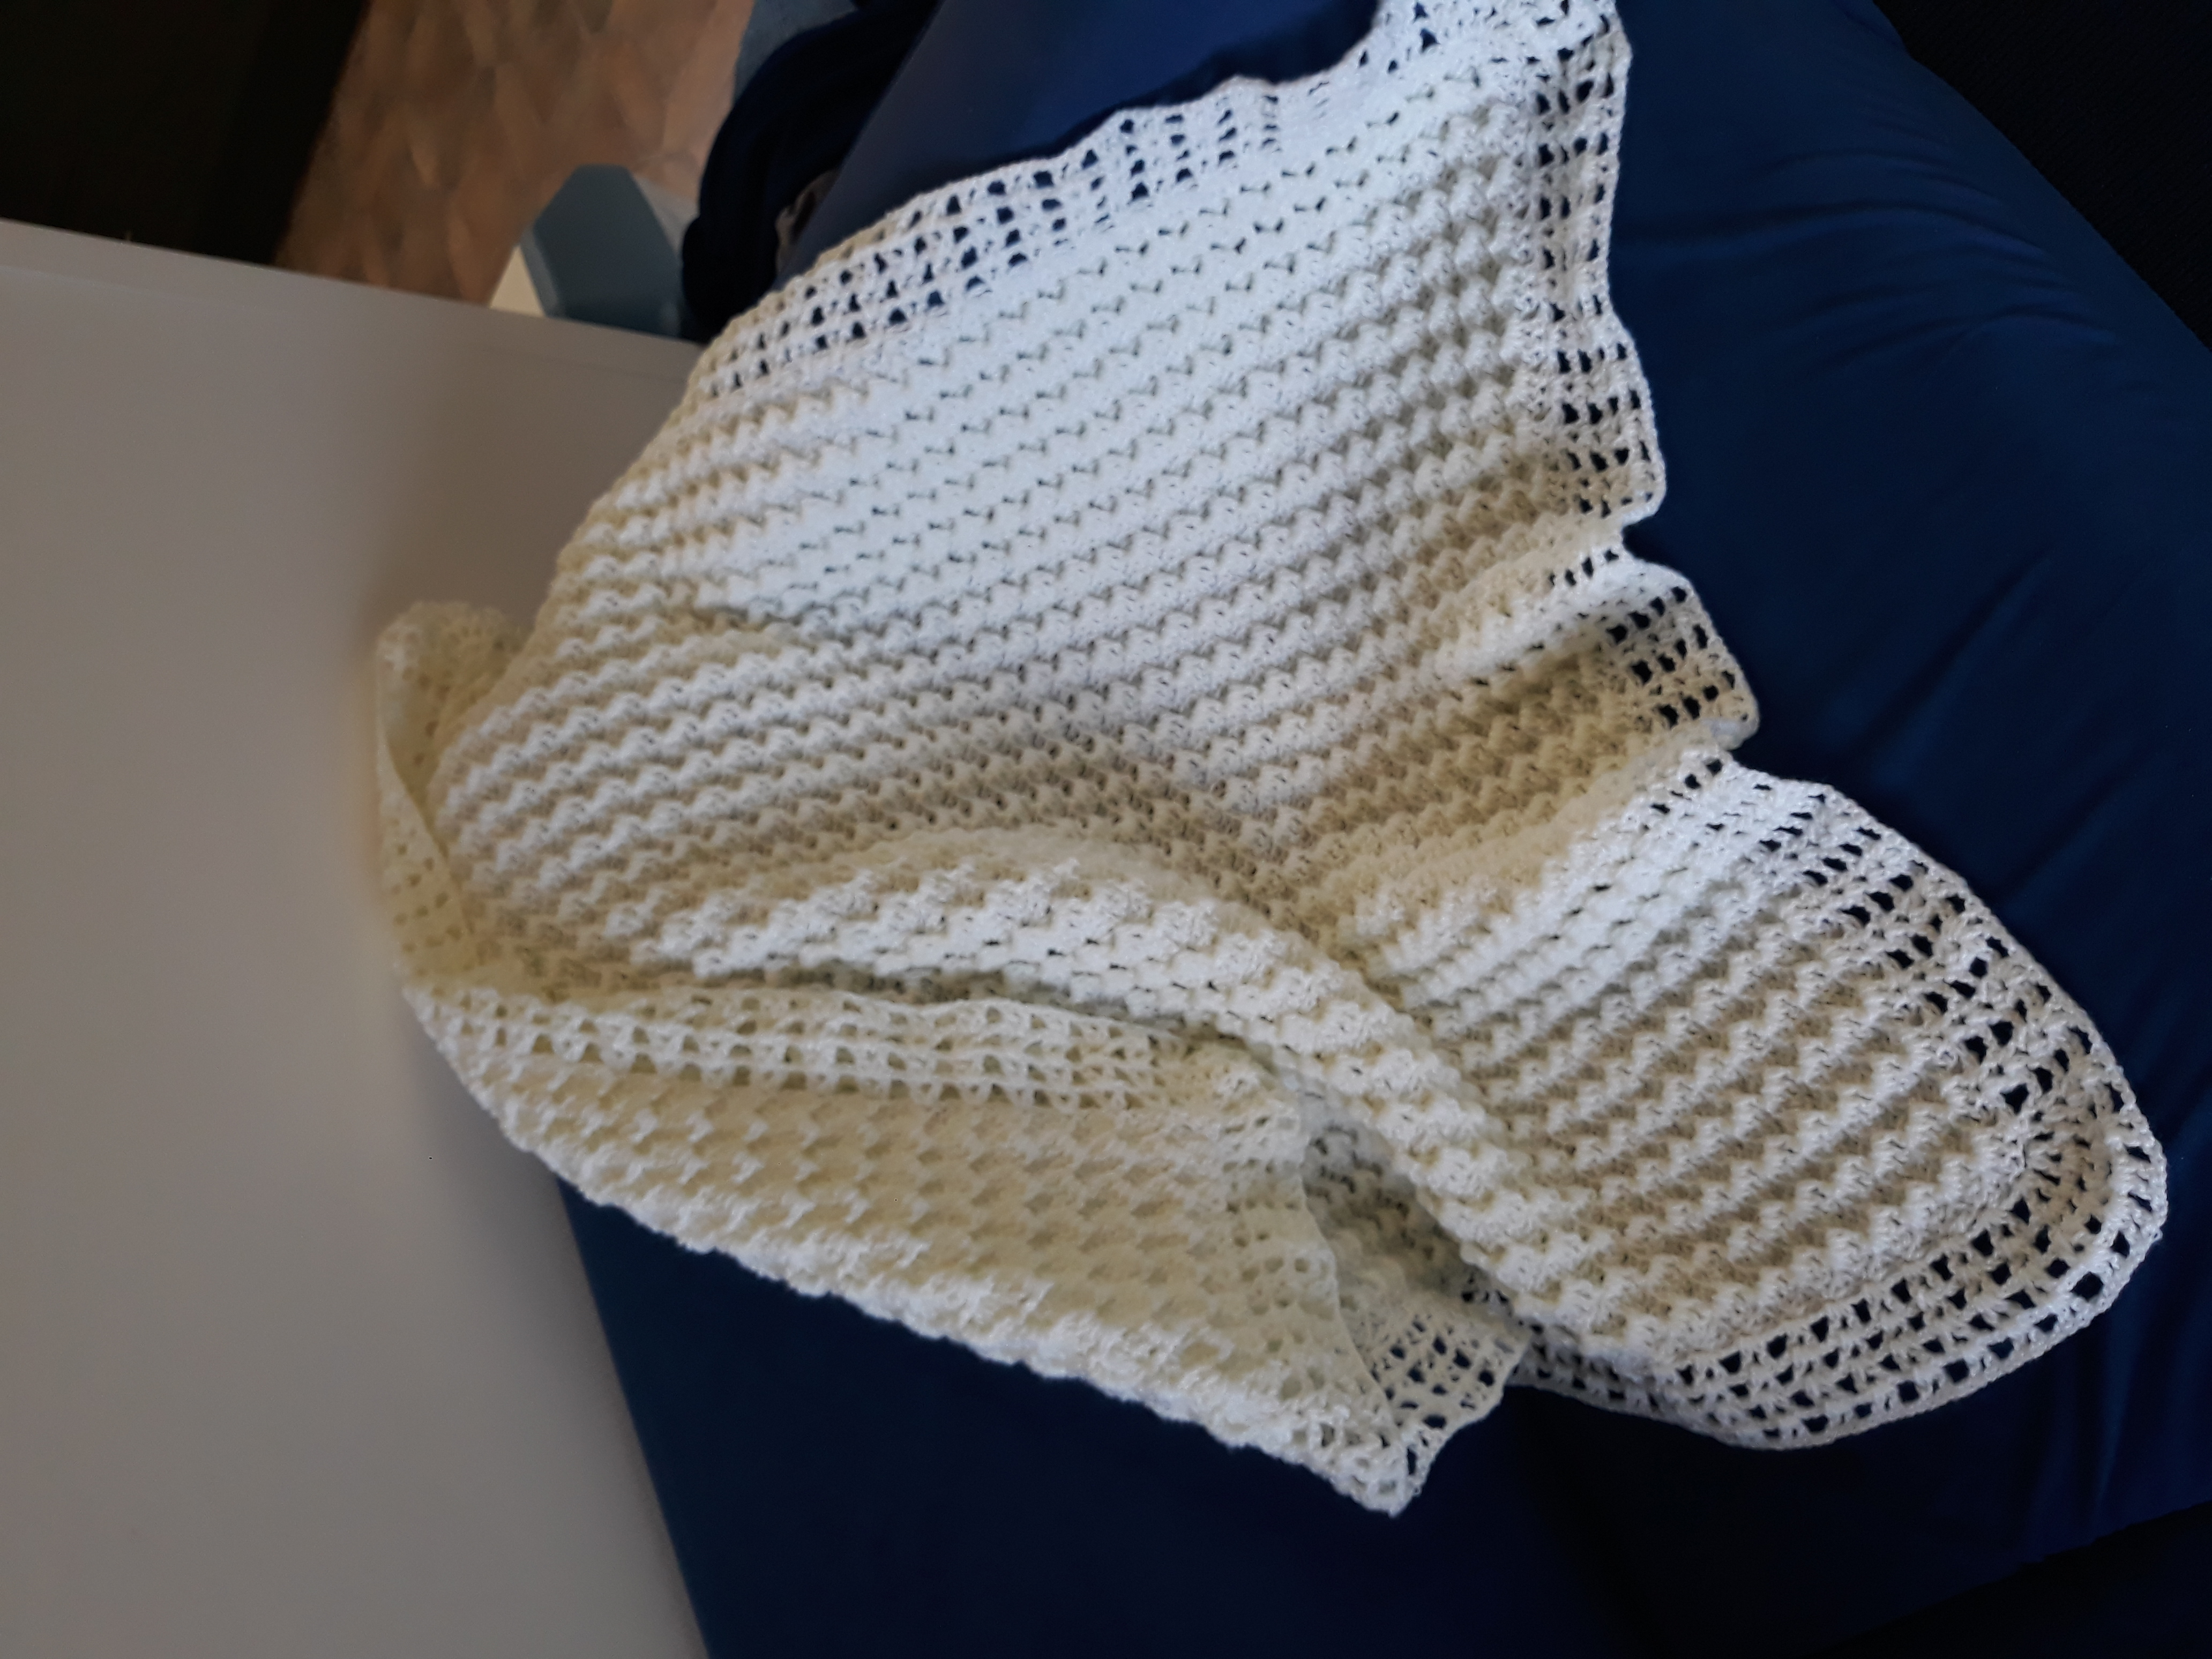 Wave Crochet Pattern Crystal Waves Ba Blanket Crochet Project Lynley F Lovecrochet